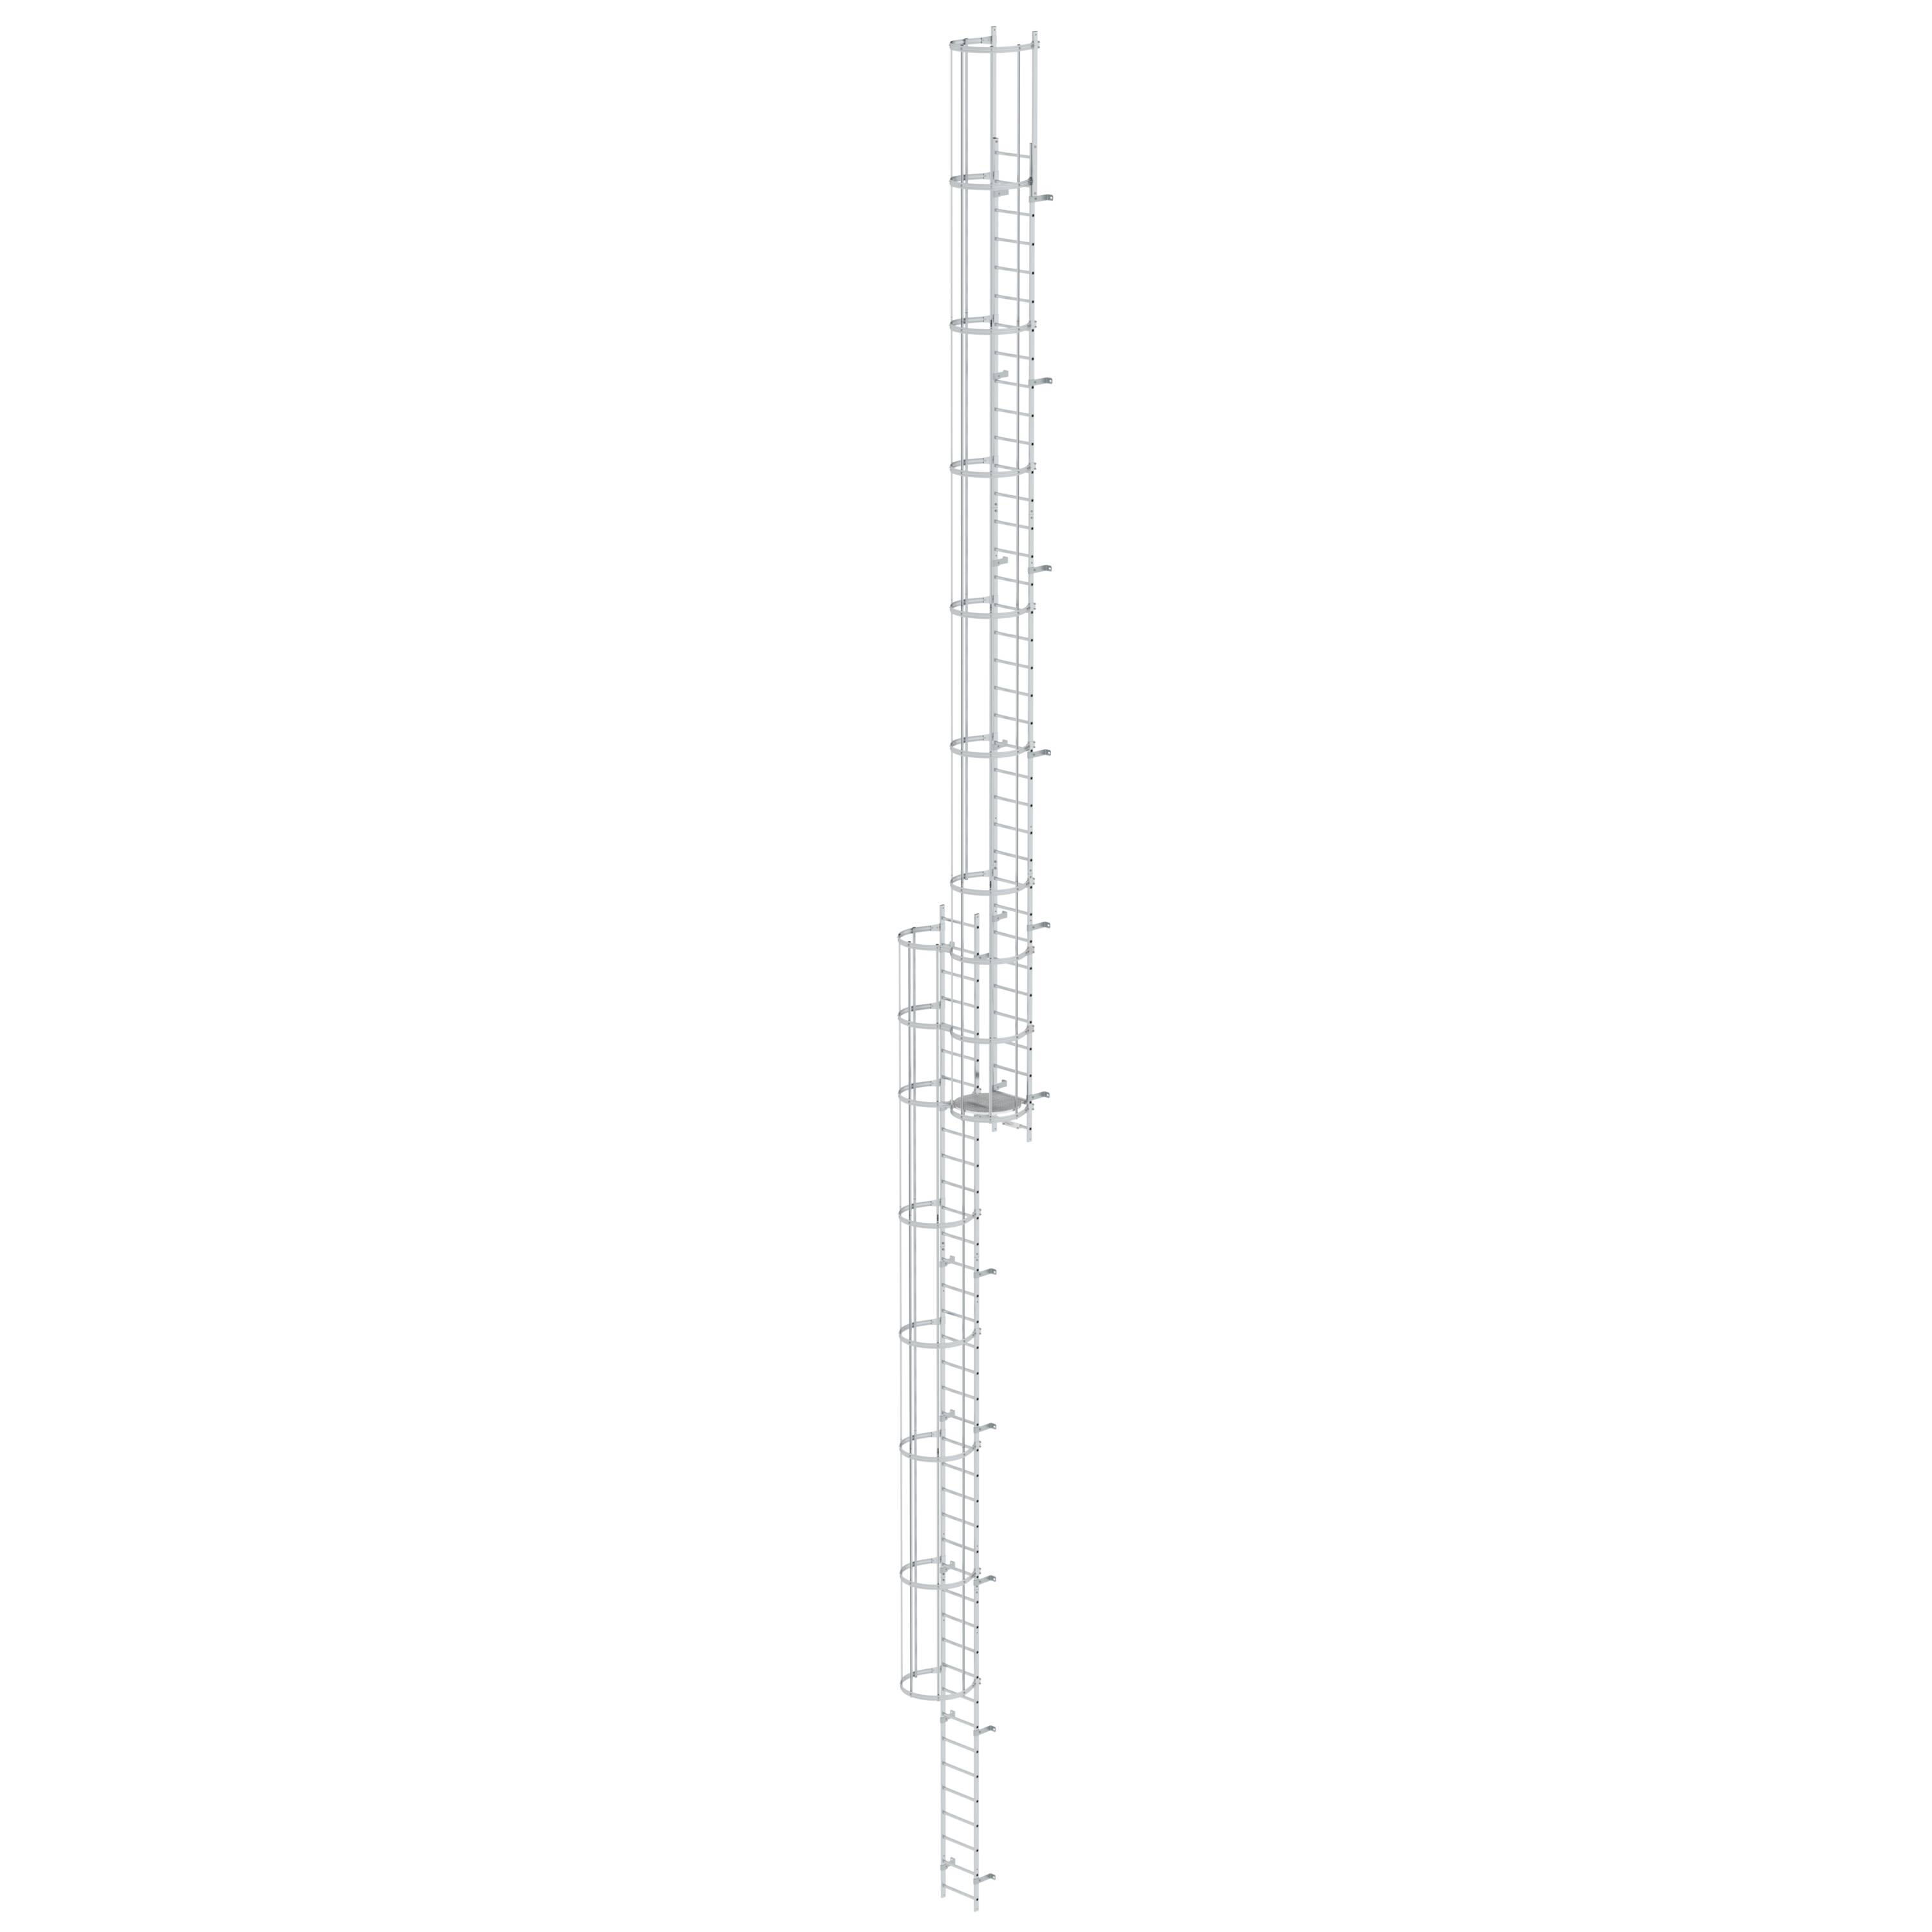 MUNK Mehrzügige Steigleiter mit Rückenschutz (Bau) Aluminium blank  